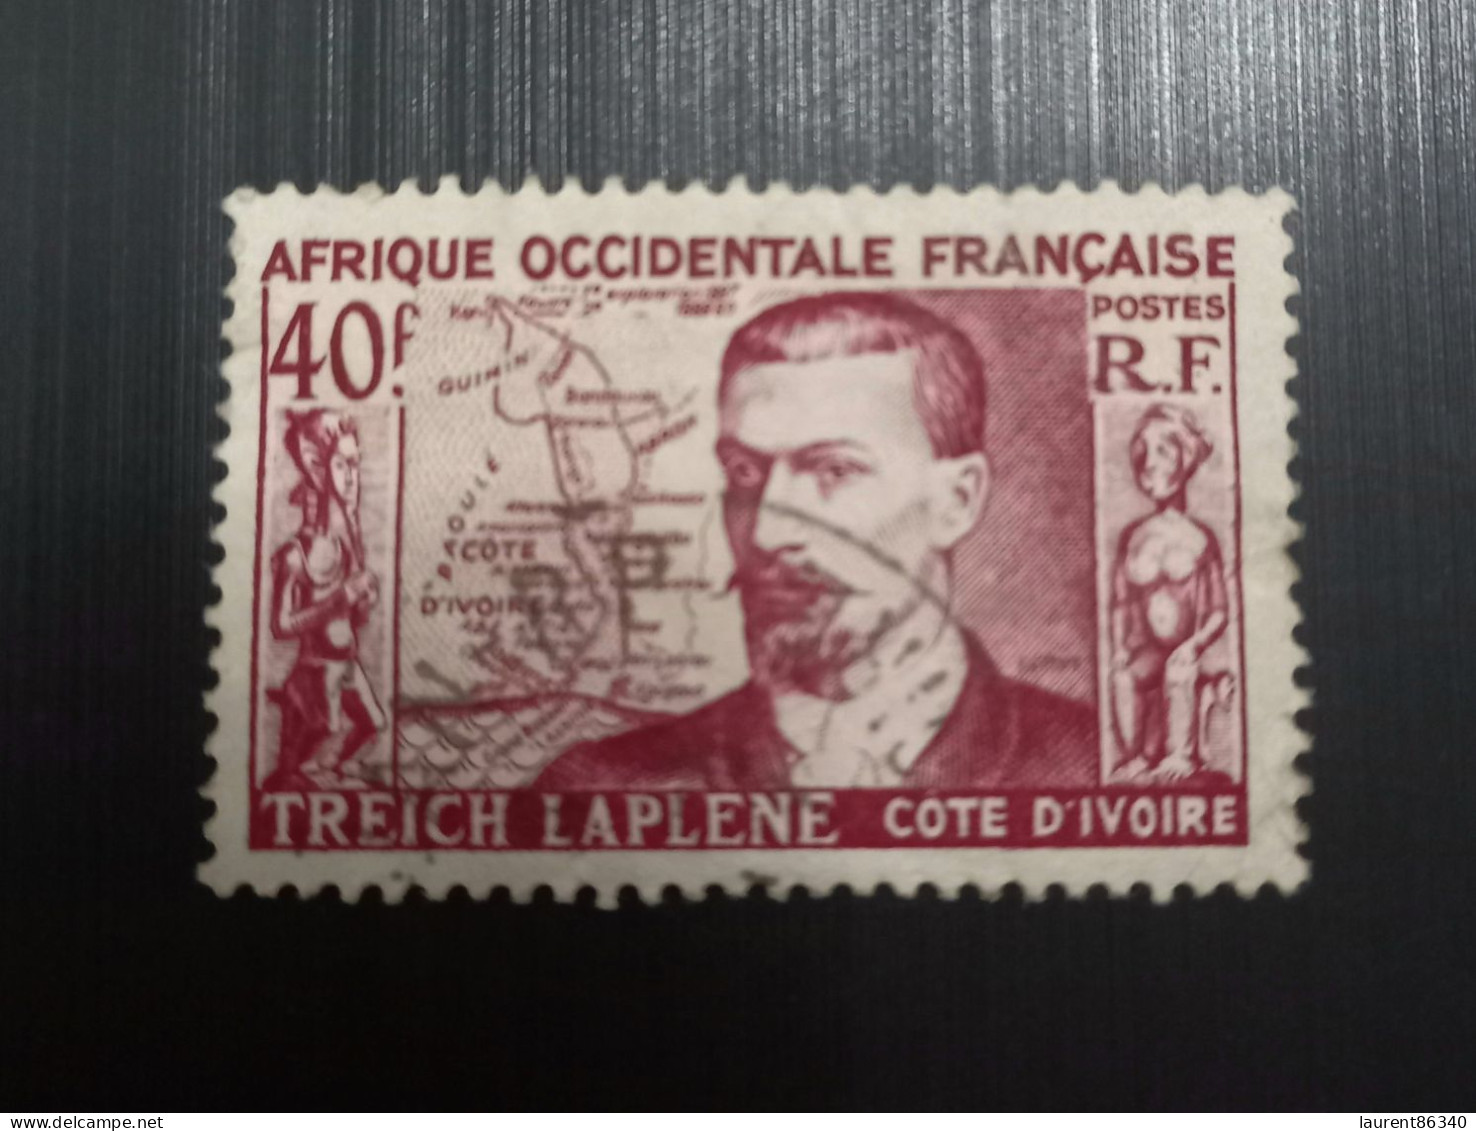 Afrique Occidentale Française 1952 Marcel Treich-Laplène (1860-1889), Fondateur De La Côte D'Ivoire - Oblitérés